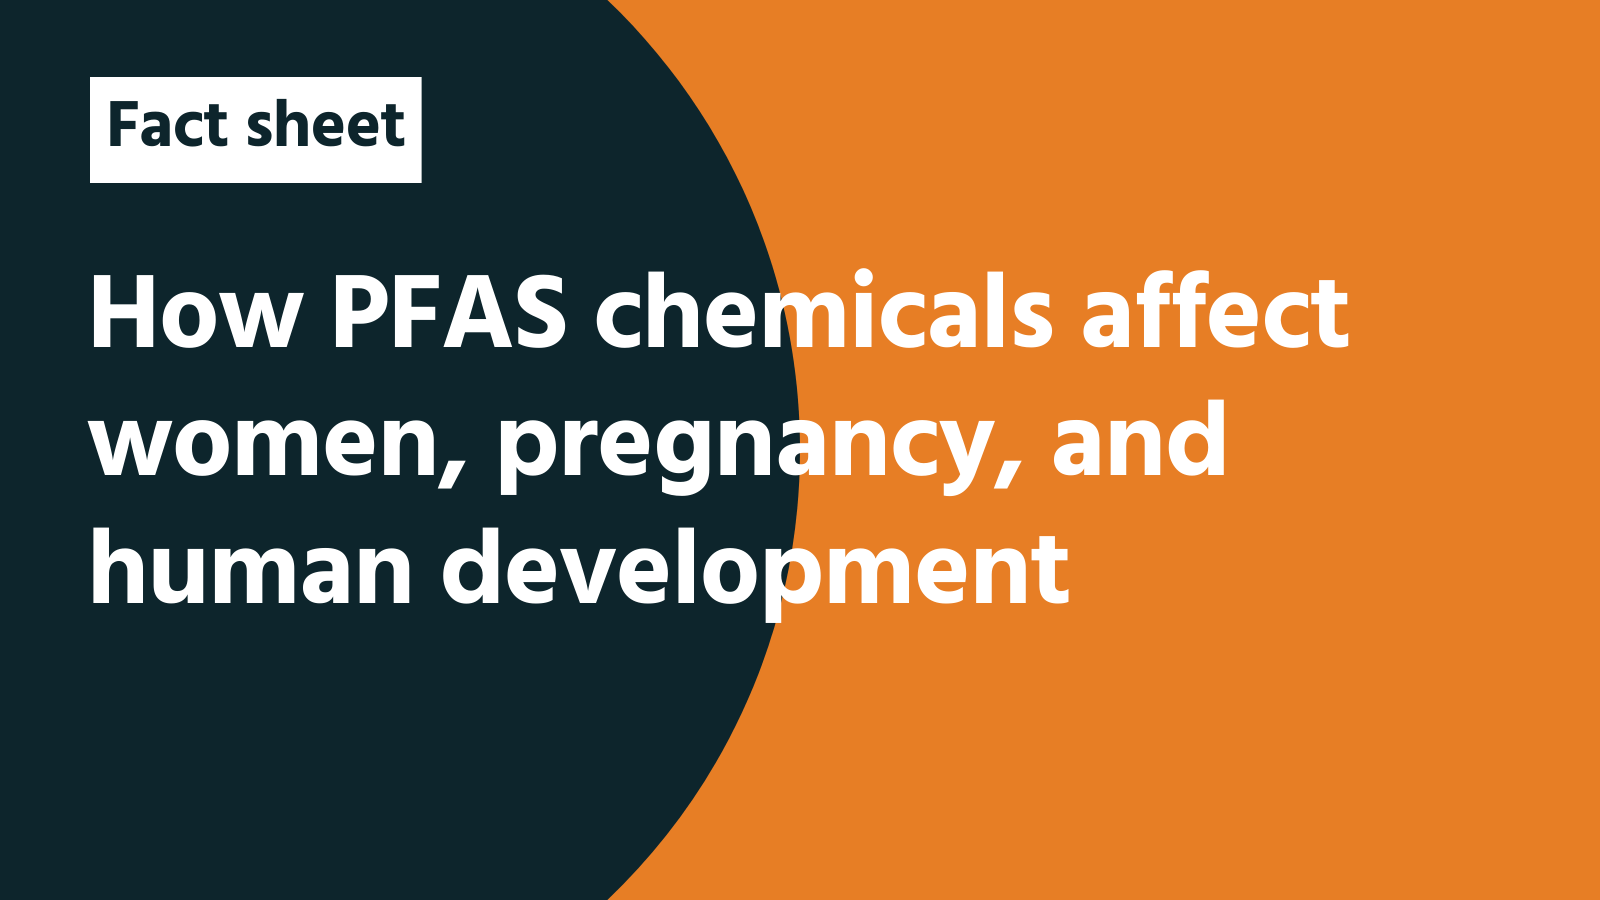 Fact sheet: How PFAS chemicals affect women, pregnancy, and human development